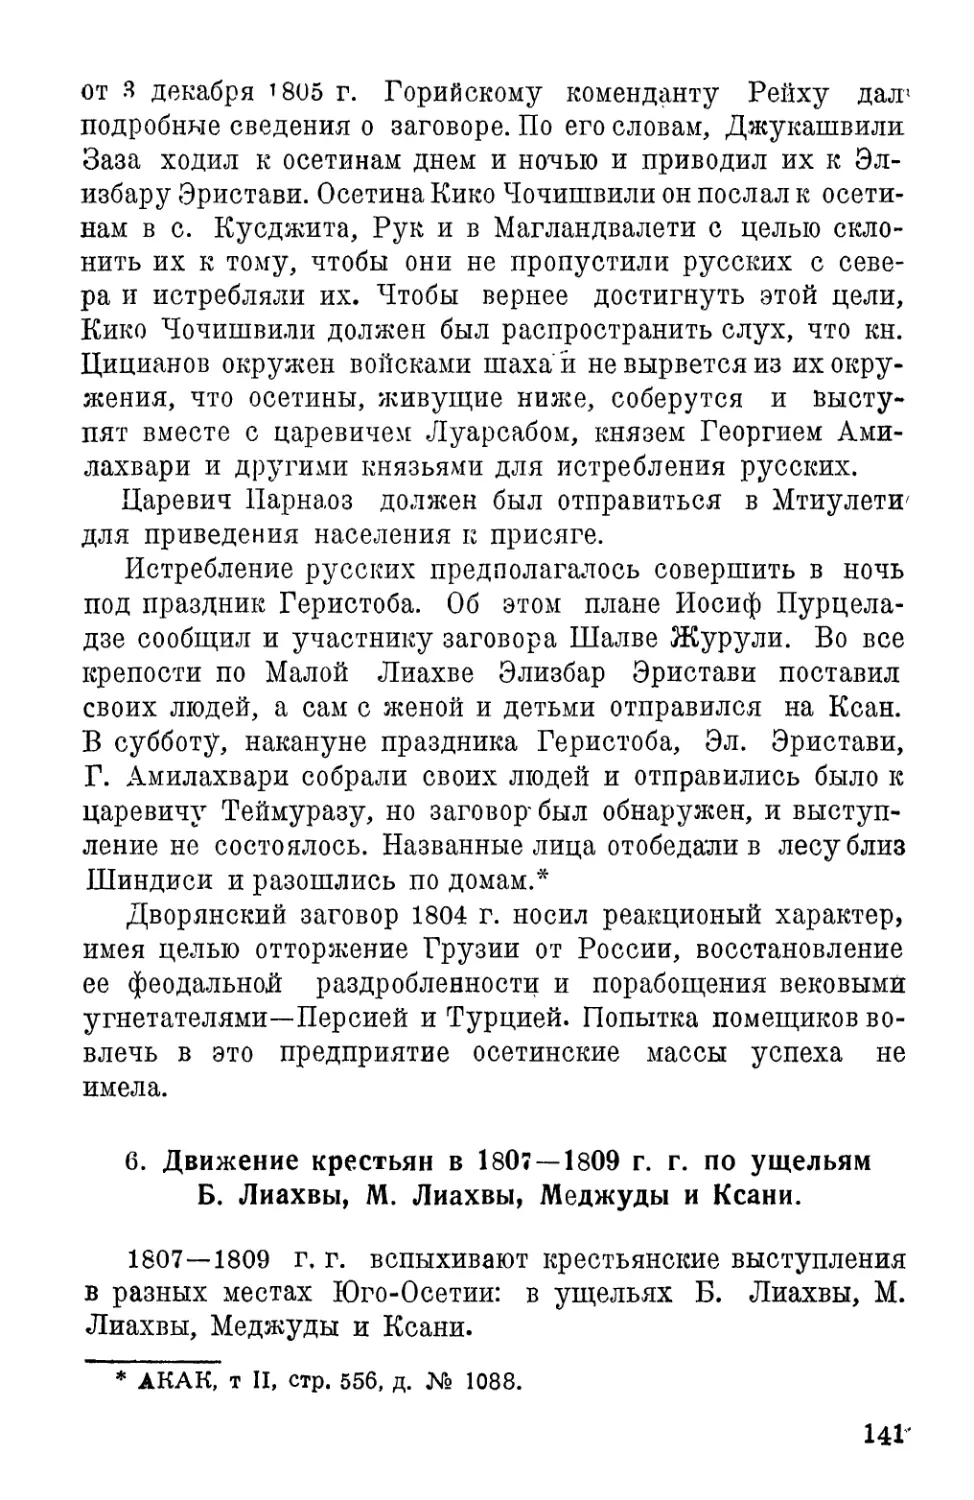 5. Движение крестьян в 1807–1809 г.г. по ущельям Б. Лиахвы, М. Лиахвы, Меджуды и Ксани